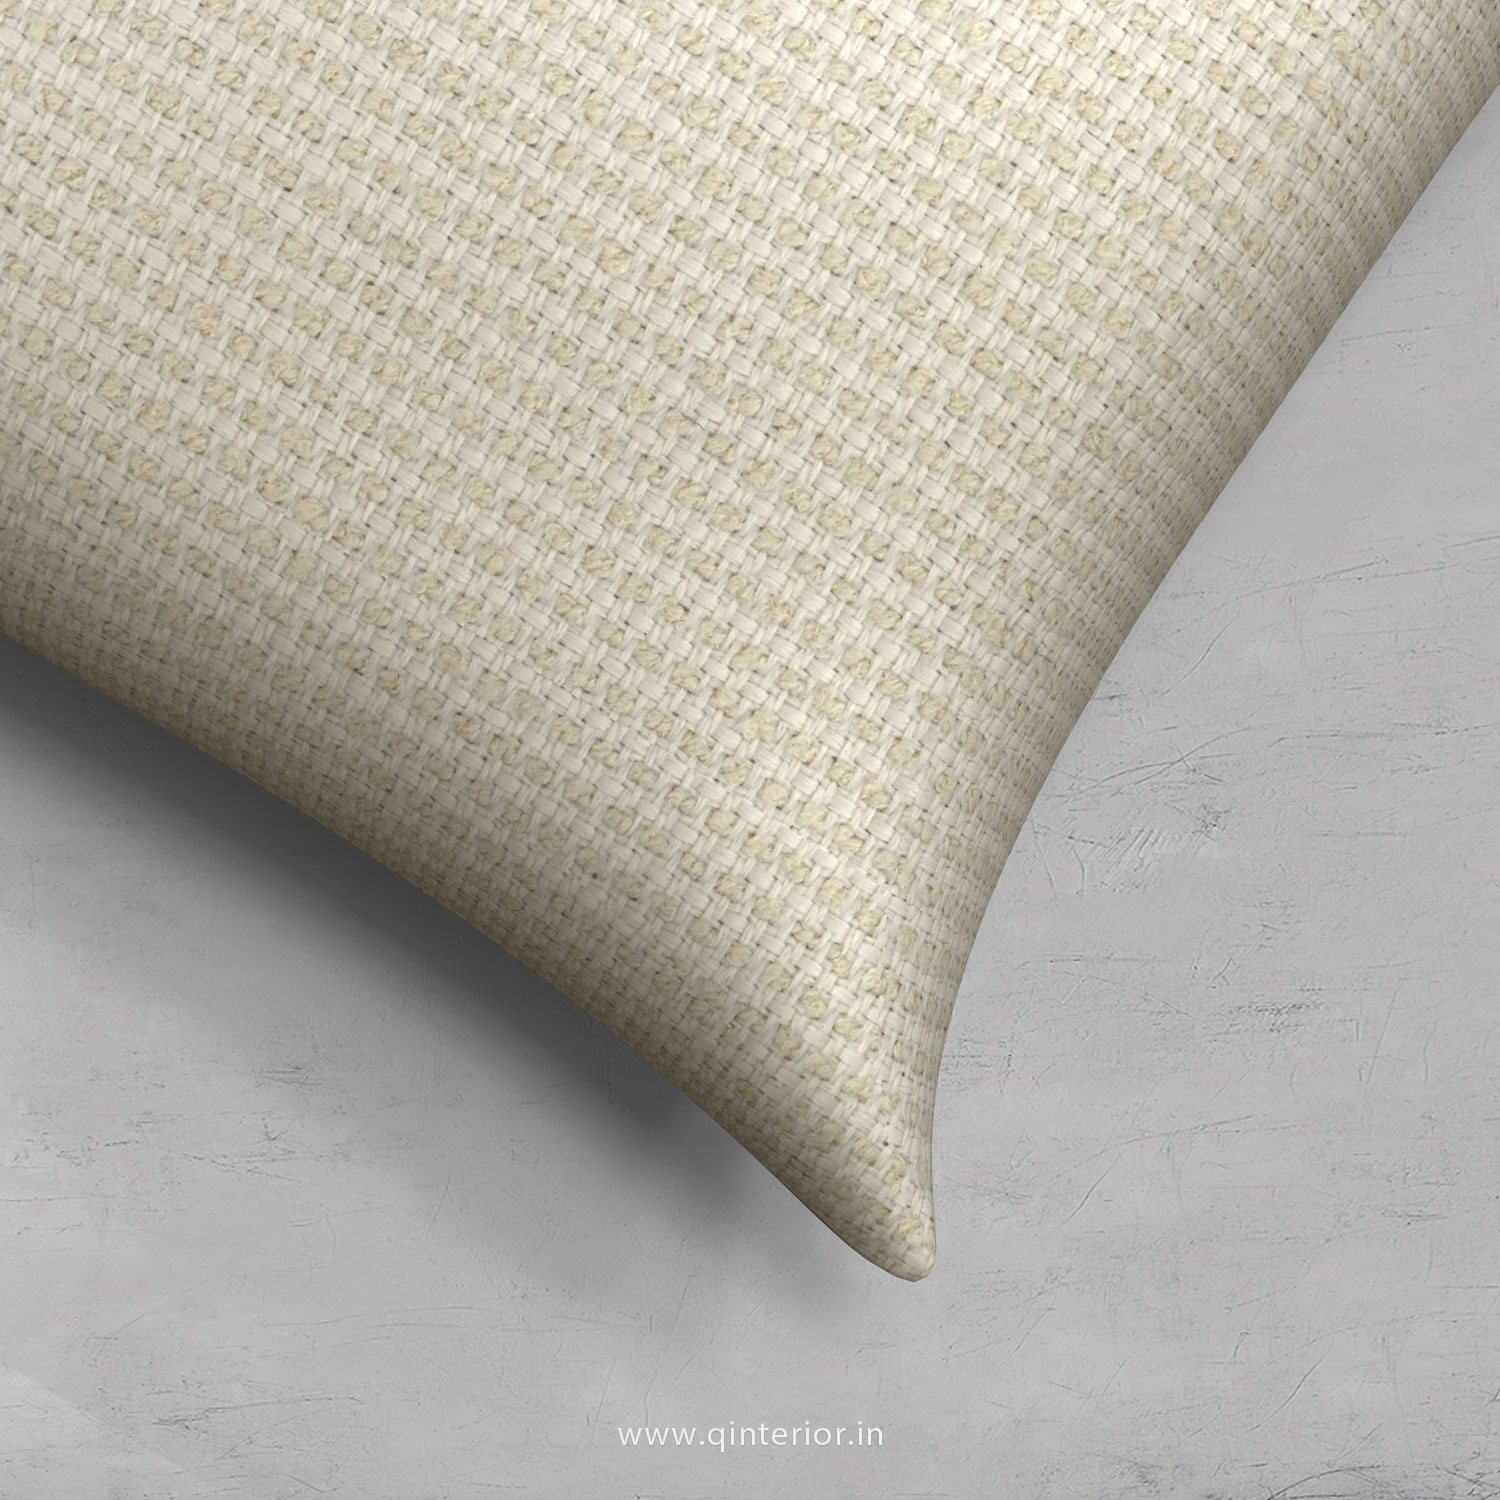 Cushion With Cushion Cover in Cotton Plain - CUS002 CP03